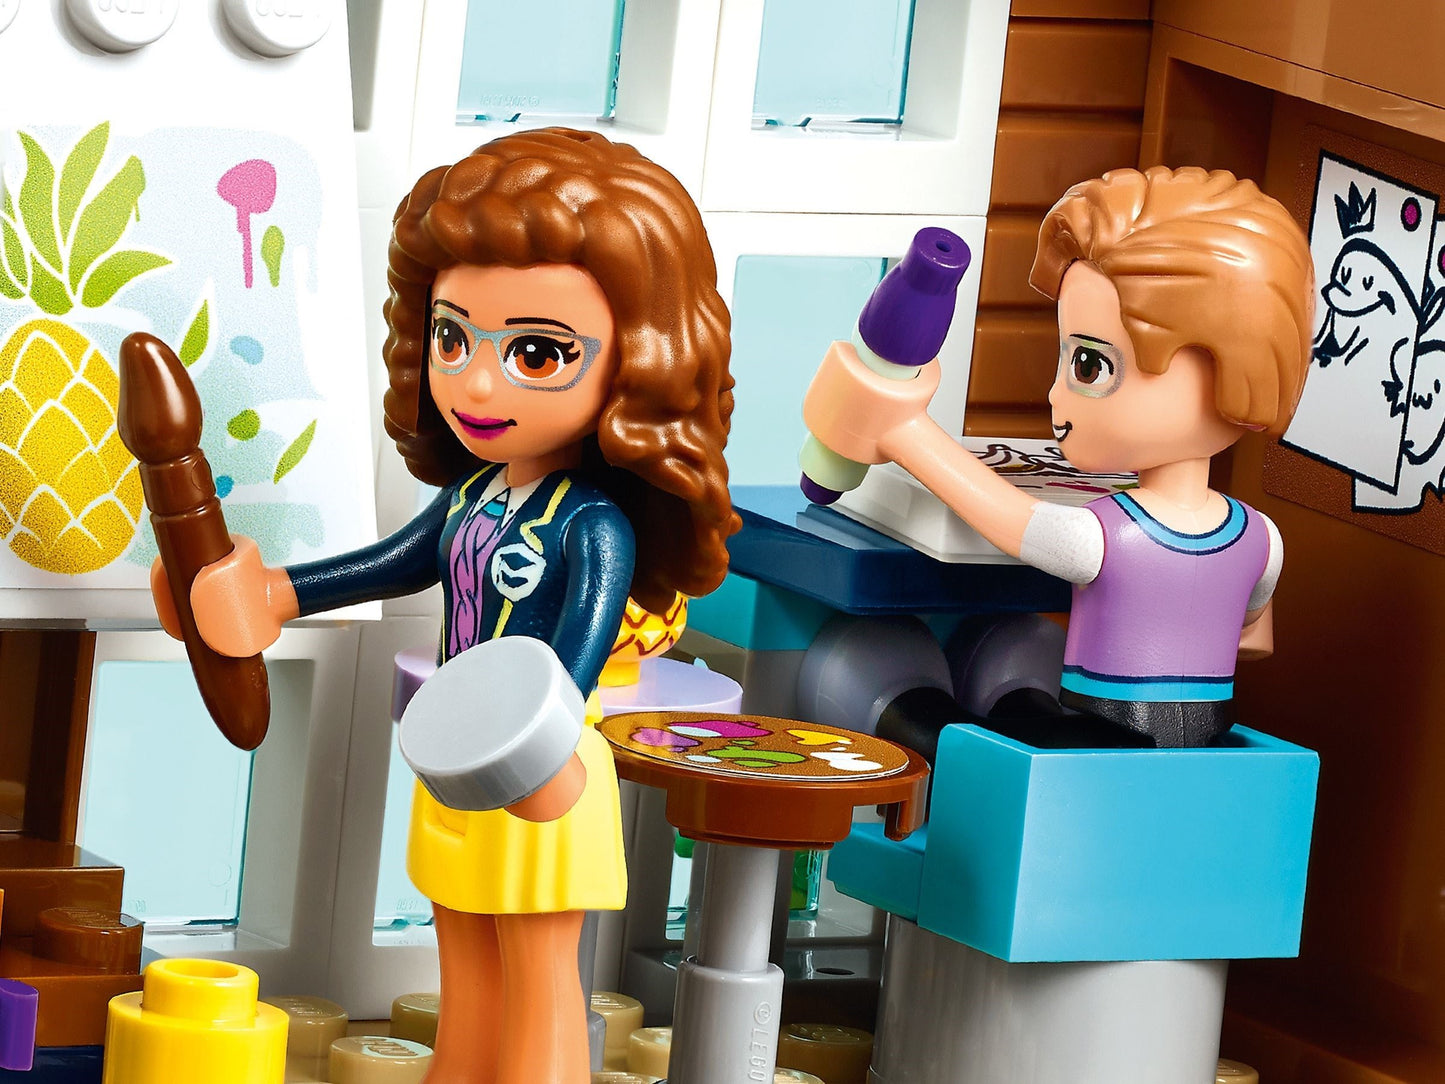 LEGO Friends - Scoala orasului Heartlake